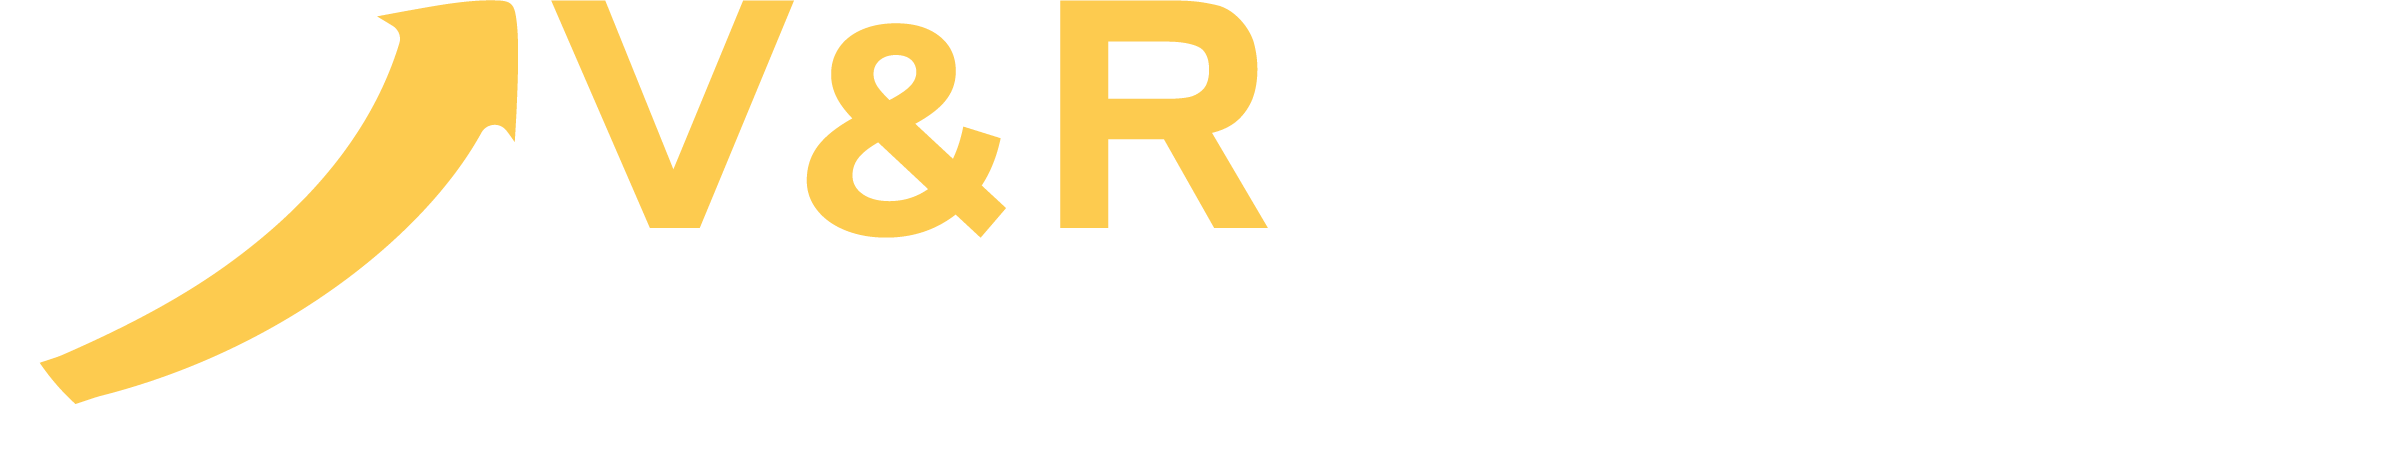 V&R Global Services